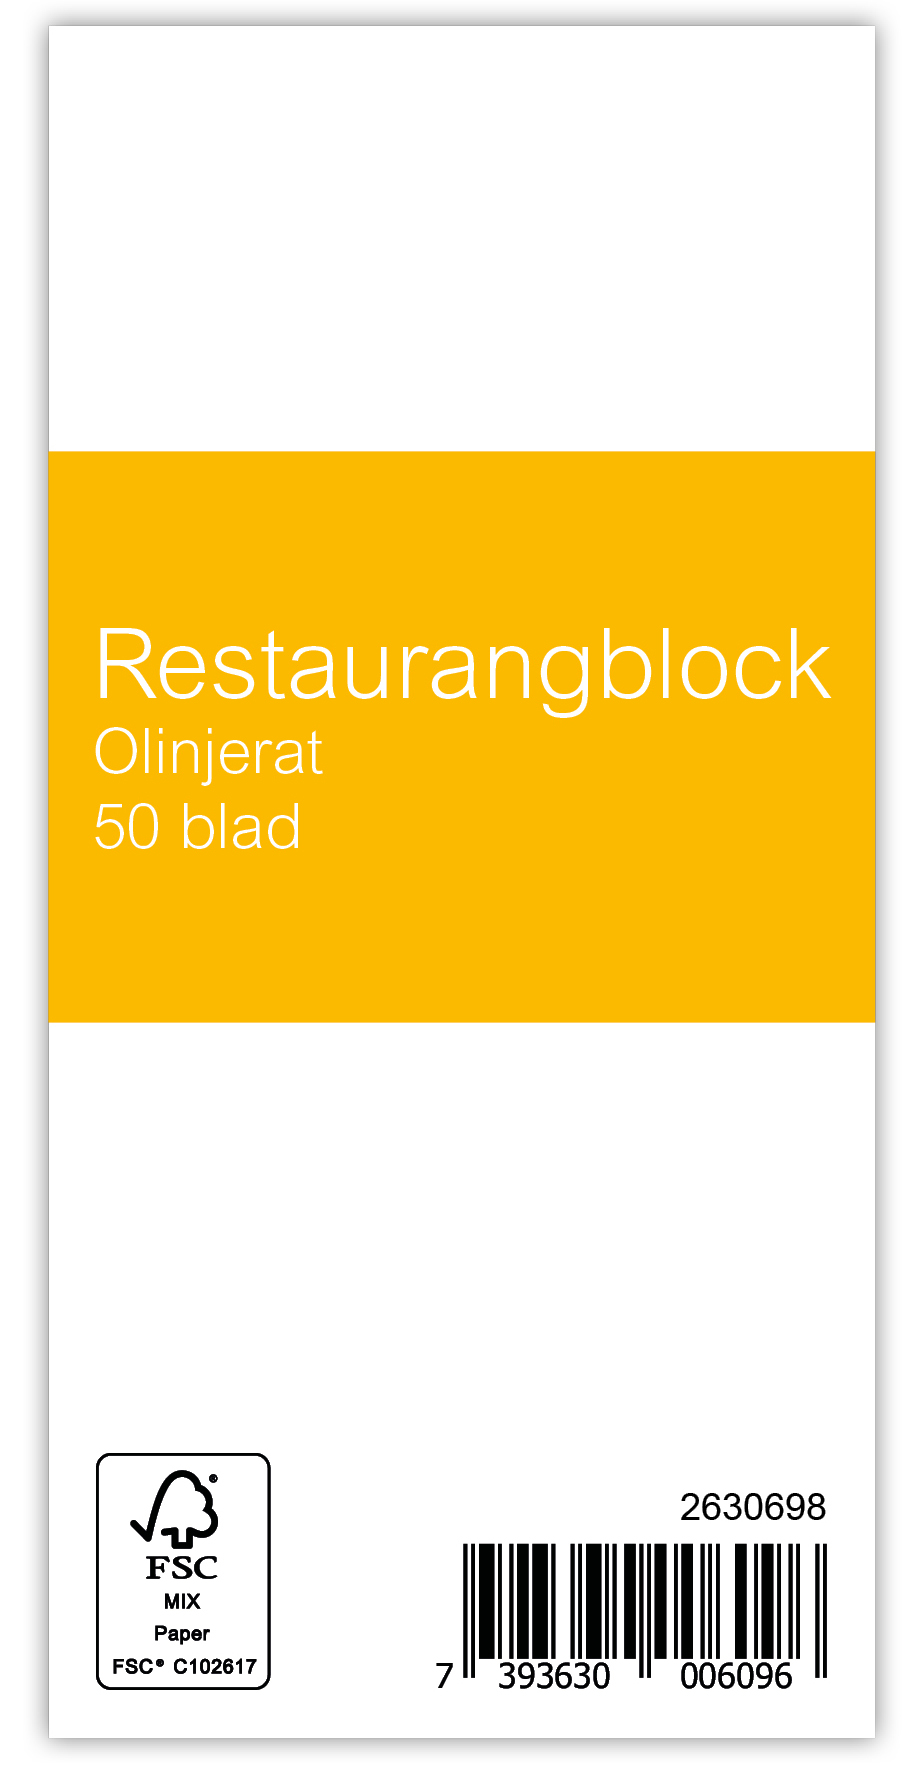 [2630698] Restaurangblock 50bl olinj